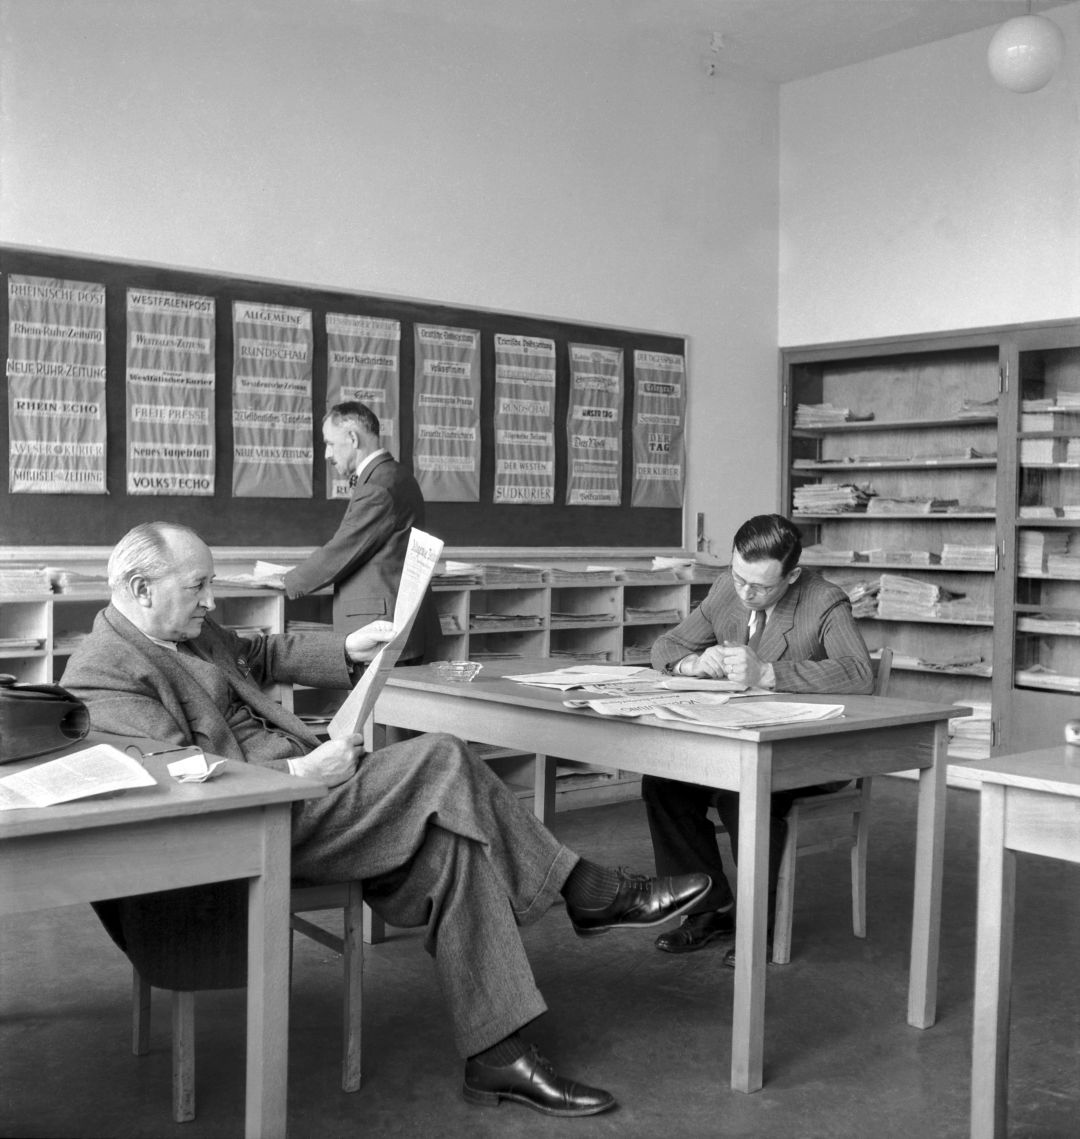 Auf dem historischen Foto lesen zwei Männer in Anzügen an einem Tisch sitzend Zeitung. Im Hintergrund steht ein weiterer Mann an einem Regal mit vielen offenen Fächern und Papierstapeln oder Zeitungen.